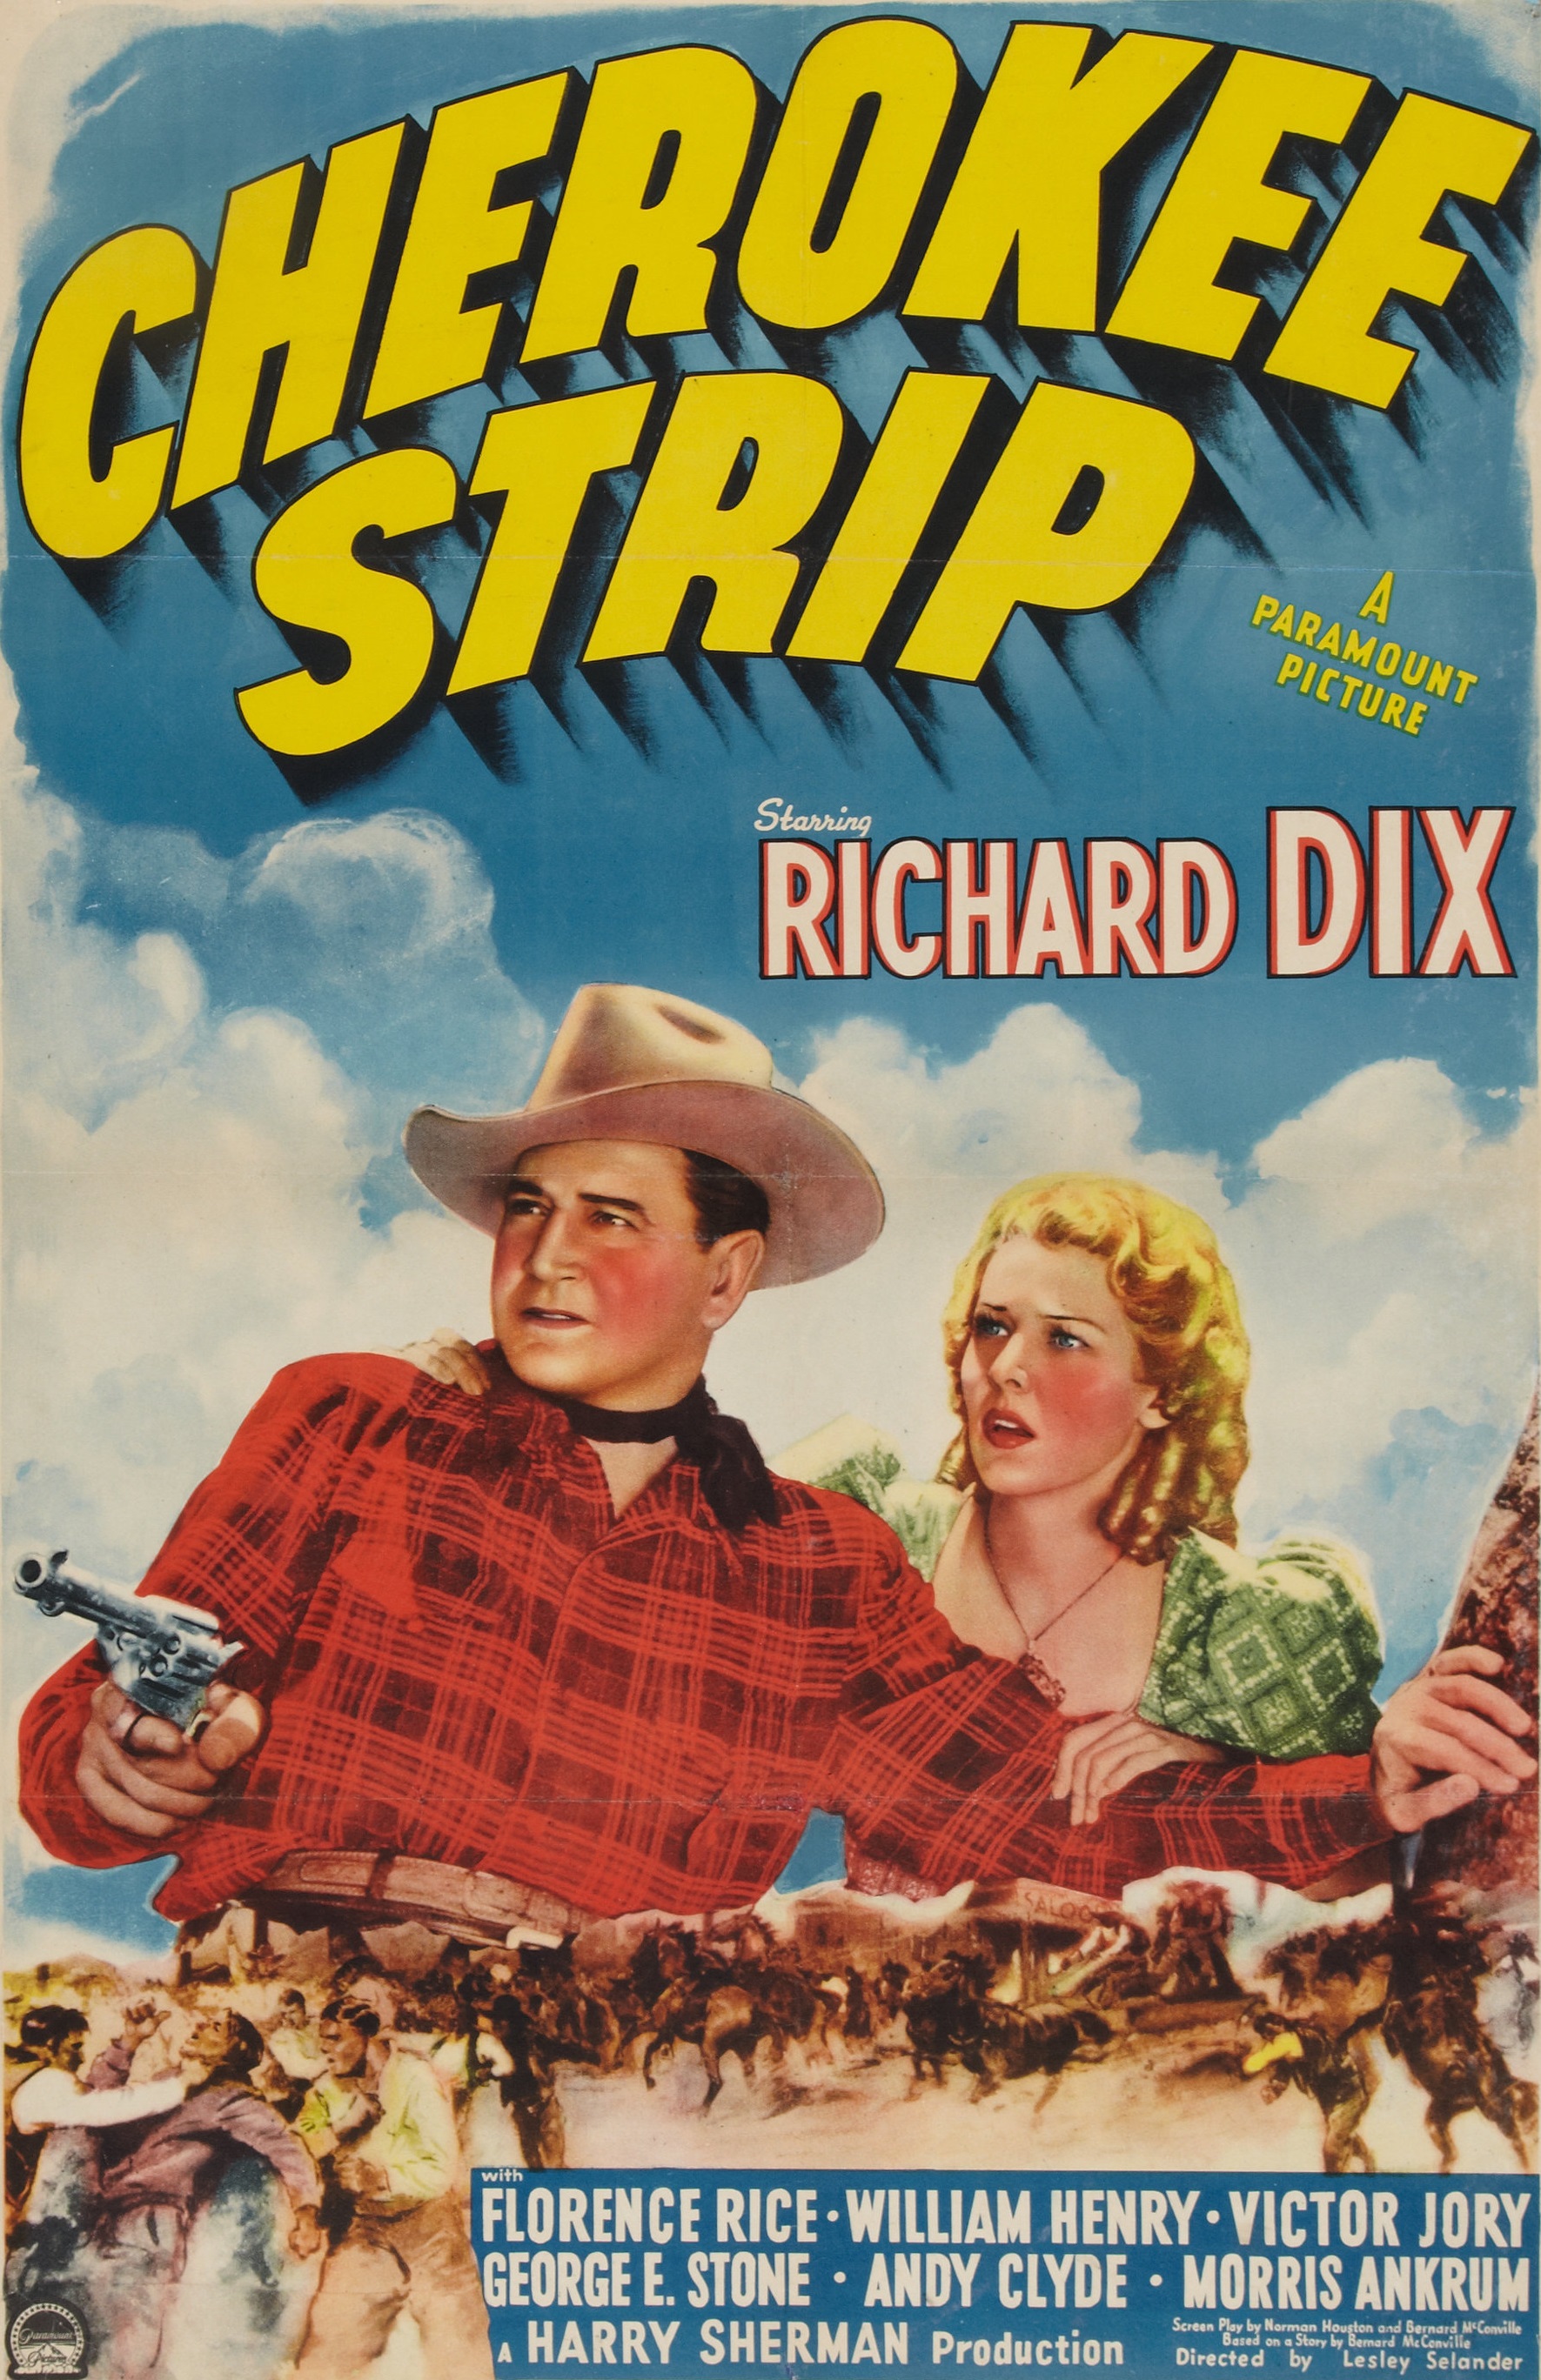 CHEROKEE STRIP (1940)